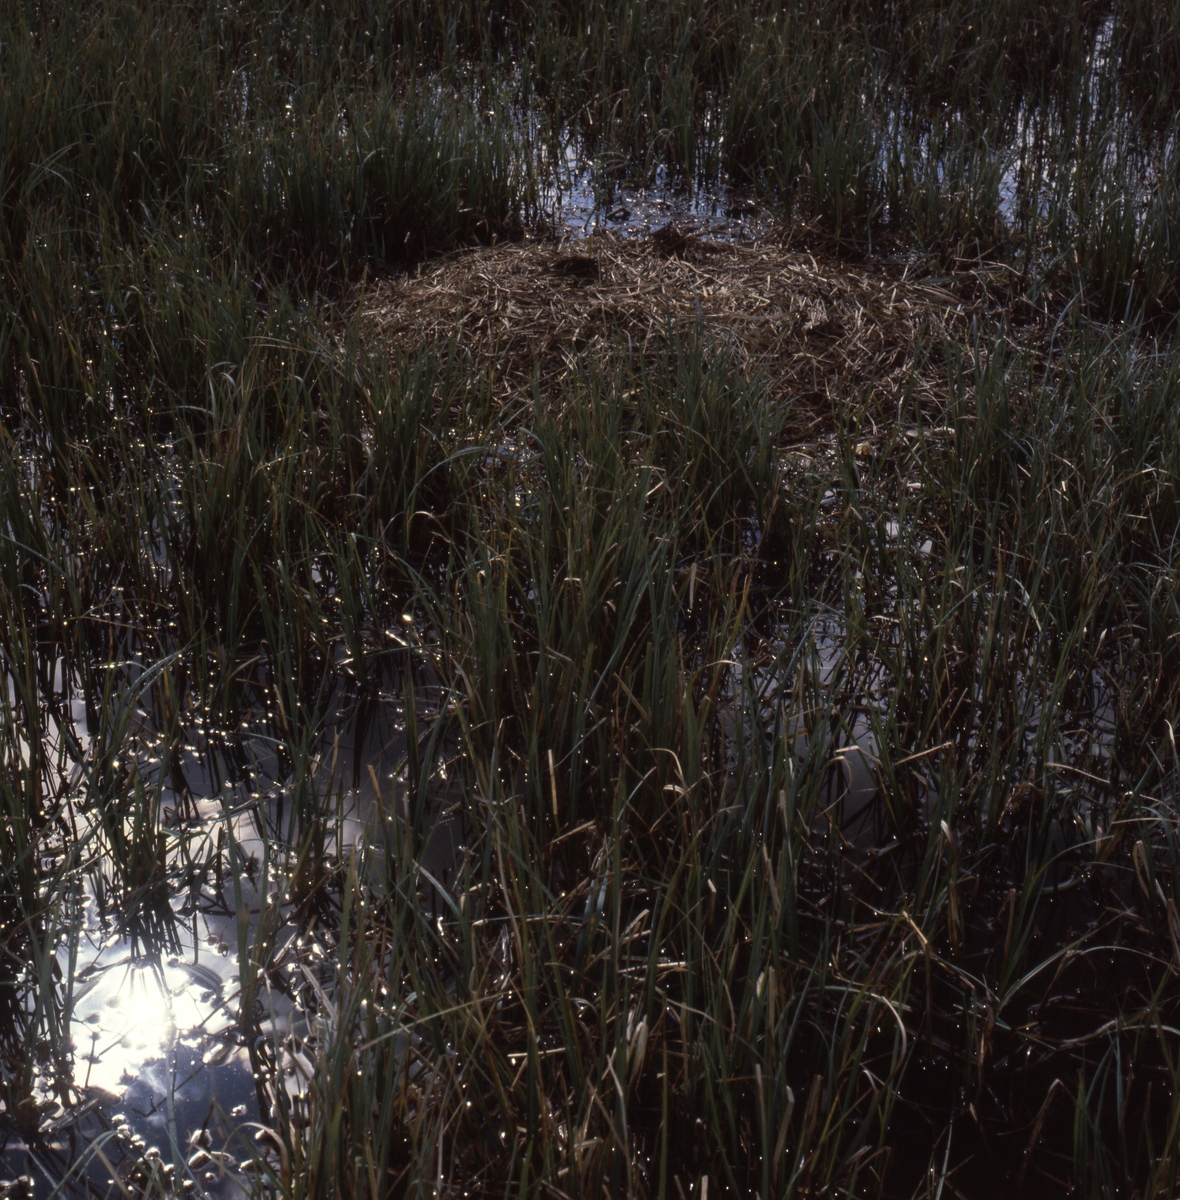 Ett fågelbo i ån bland gräs och vass, Glösbo april 1980.